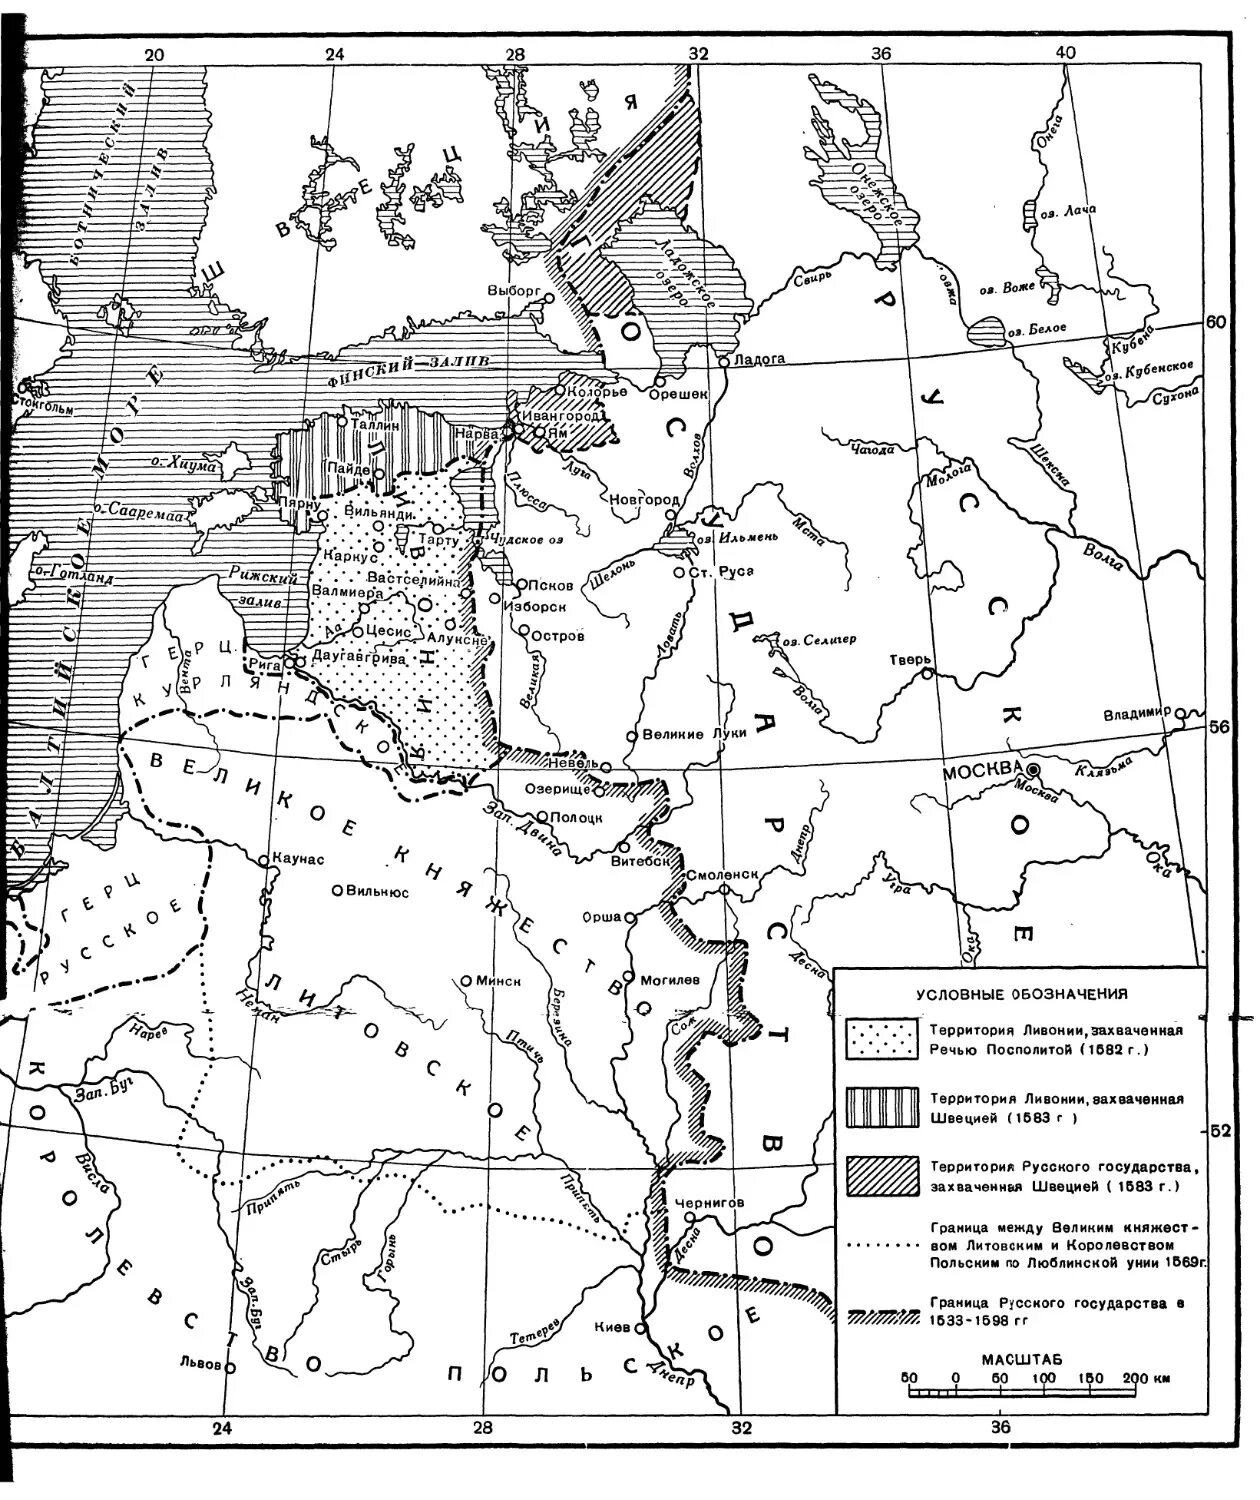 Подготовьте историческую справку о ливонском ордене. Ливонский орден карта 16 век. Ливонский орден на карте в 16 веке. Где находилась территория Ливонского ордена в 13 веке на карте.